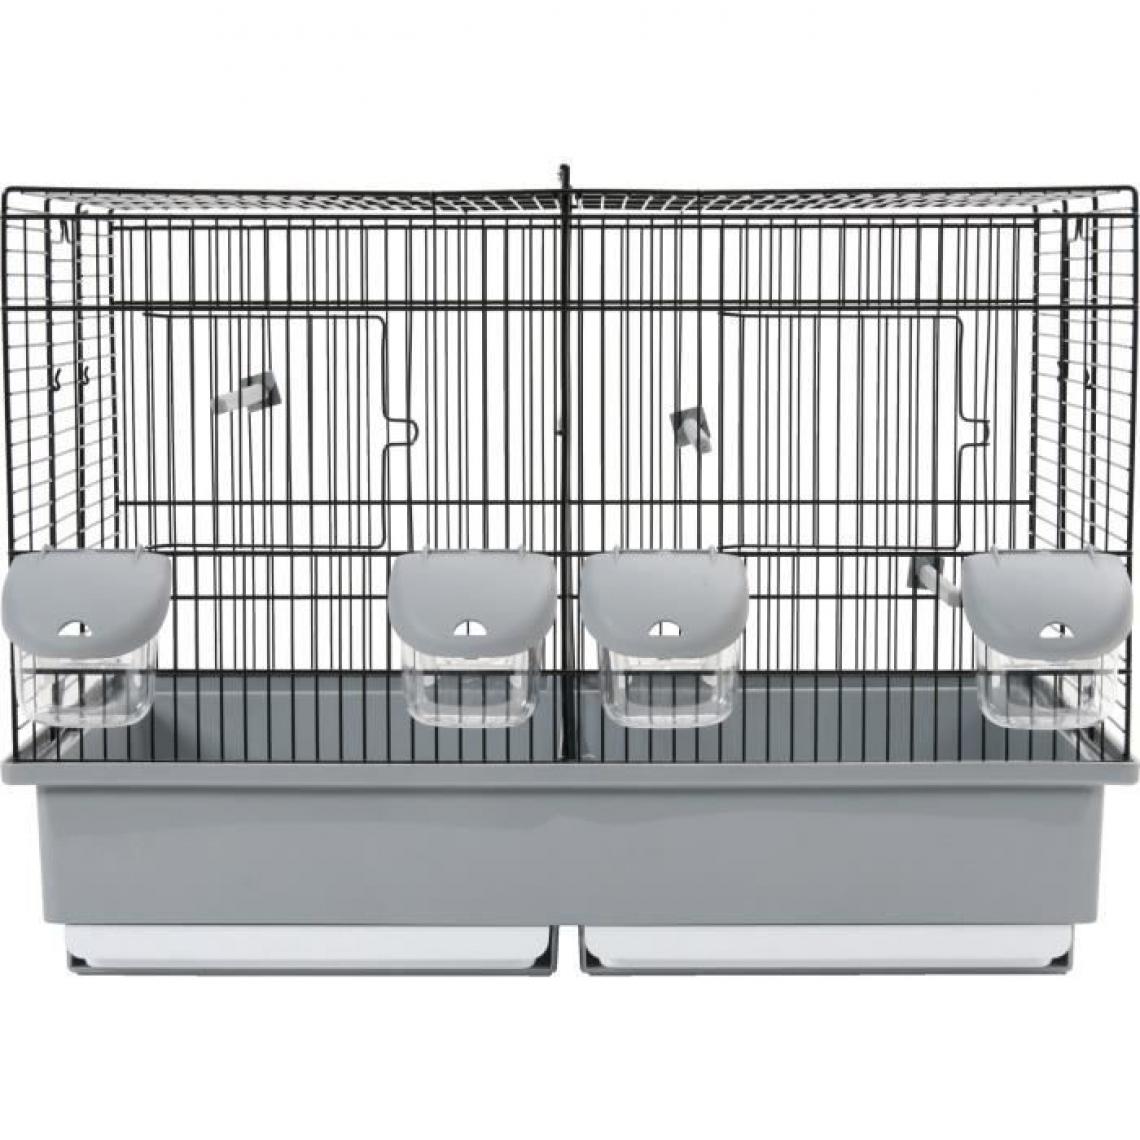 Icaverne - VOLIERE - CAGE OISEAU Cage élevage pour oiseaux - L 57 x P 31 x H 41 cm - Noir et gris - Cage à oiseaux